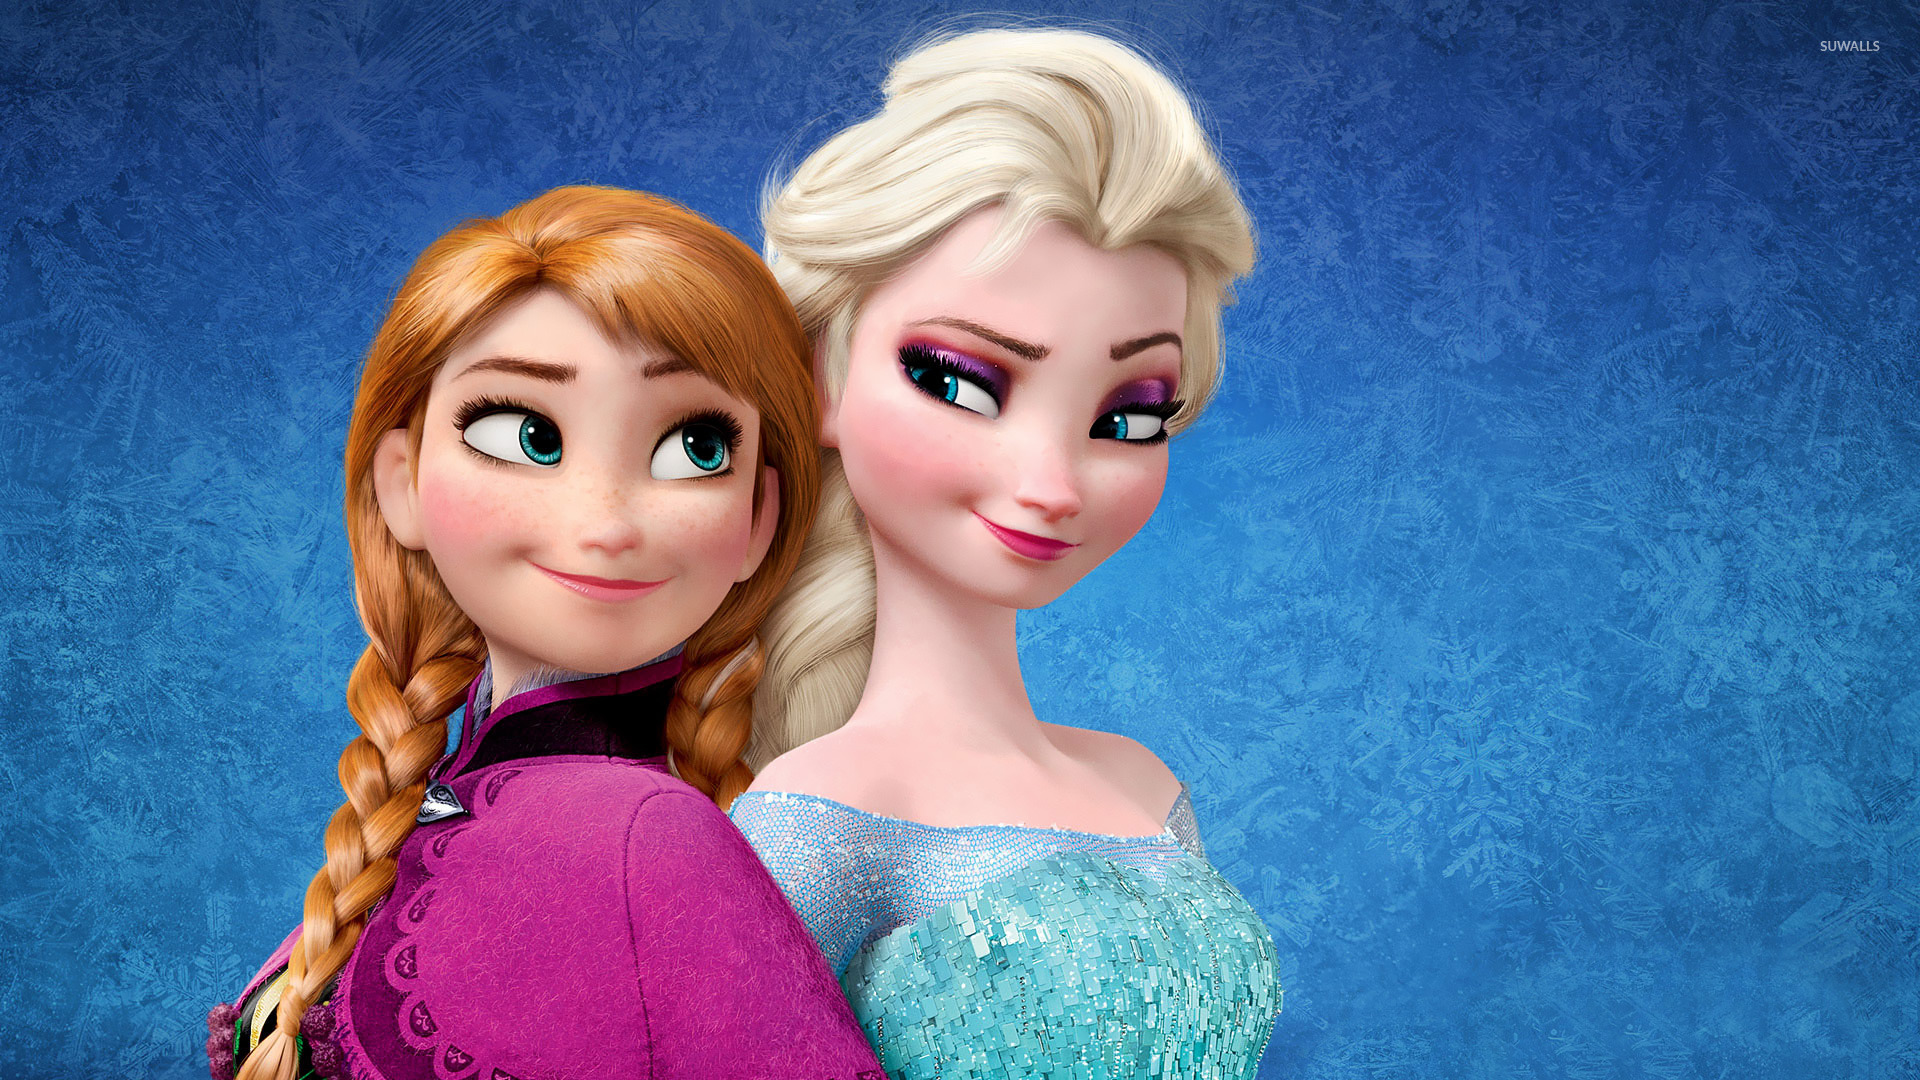 Elsa and Anna - Frozen wallpaper - Cartoon wallpapers - #25421